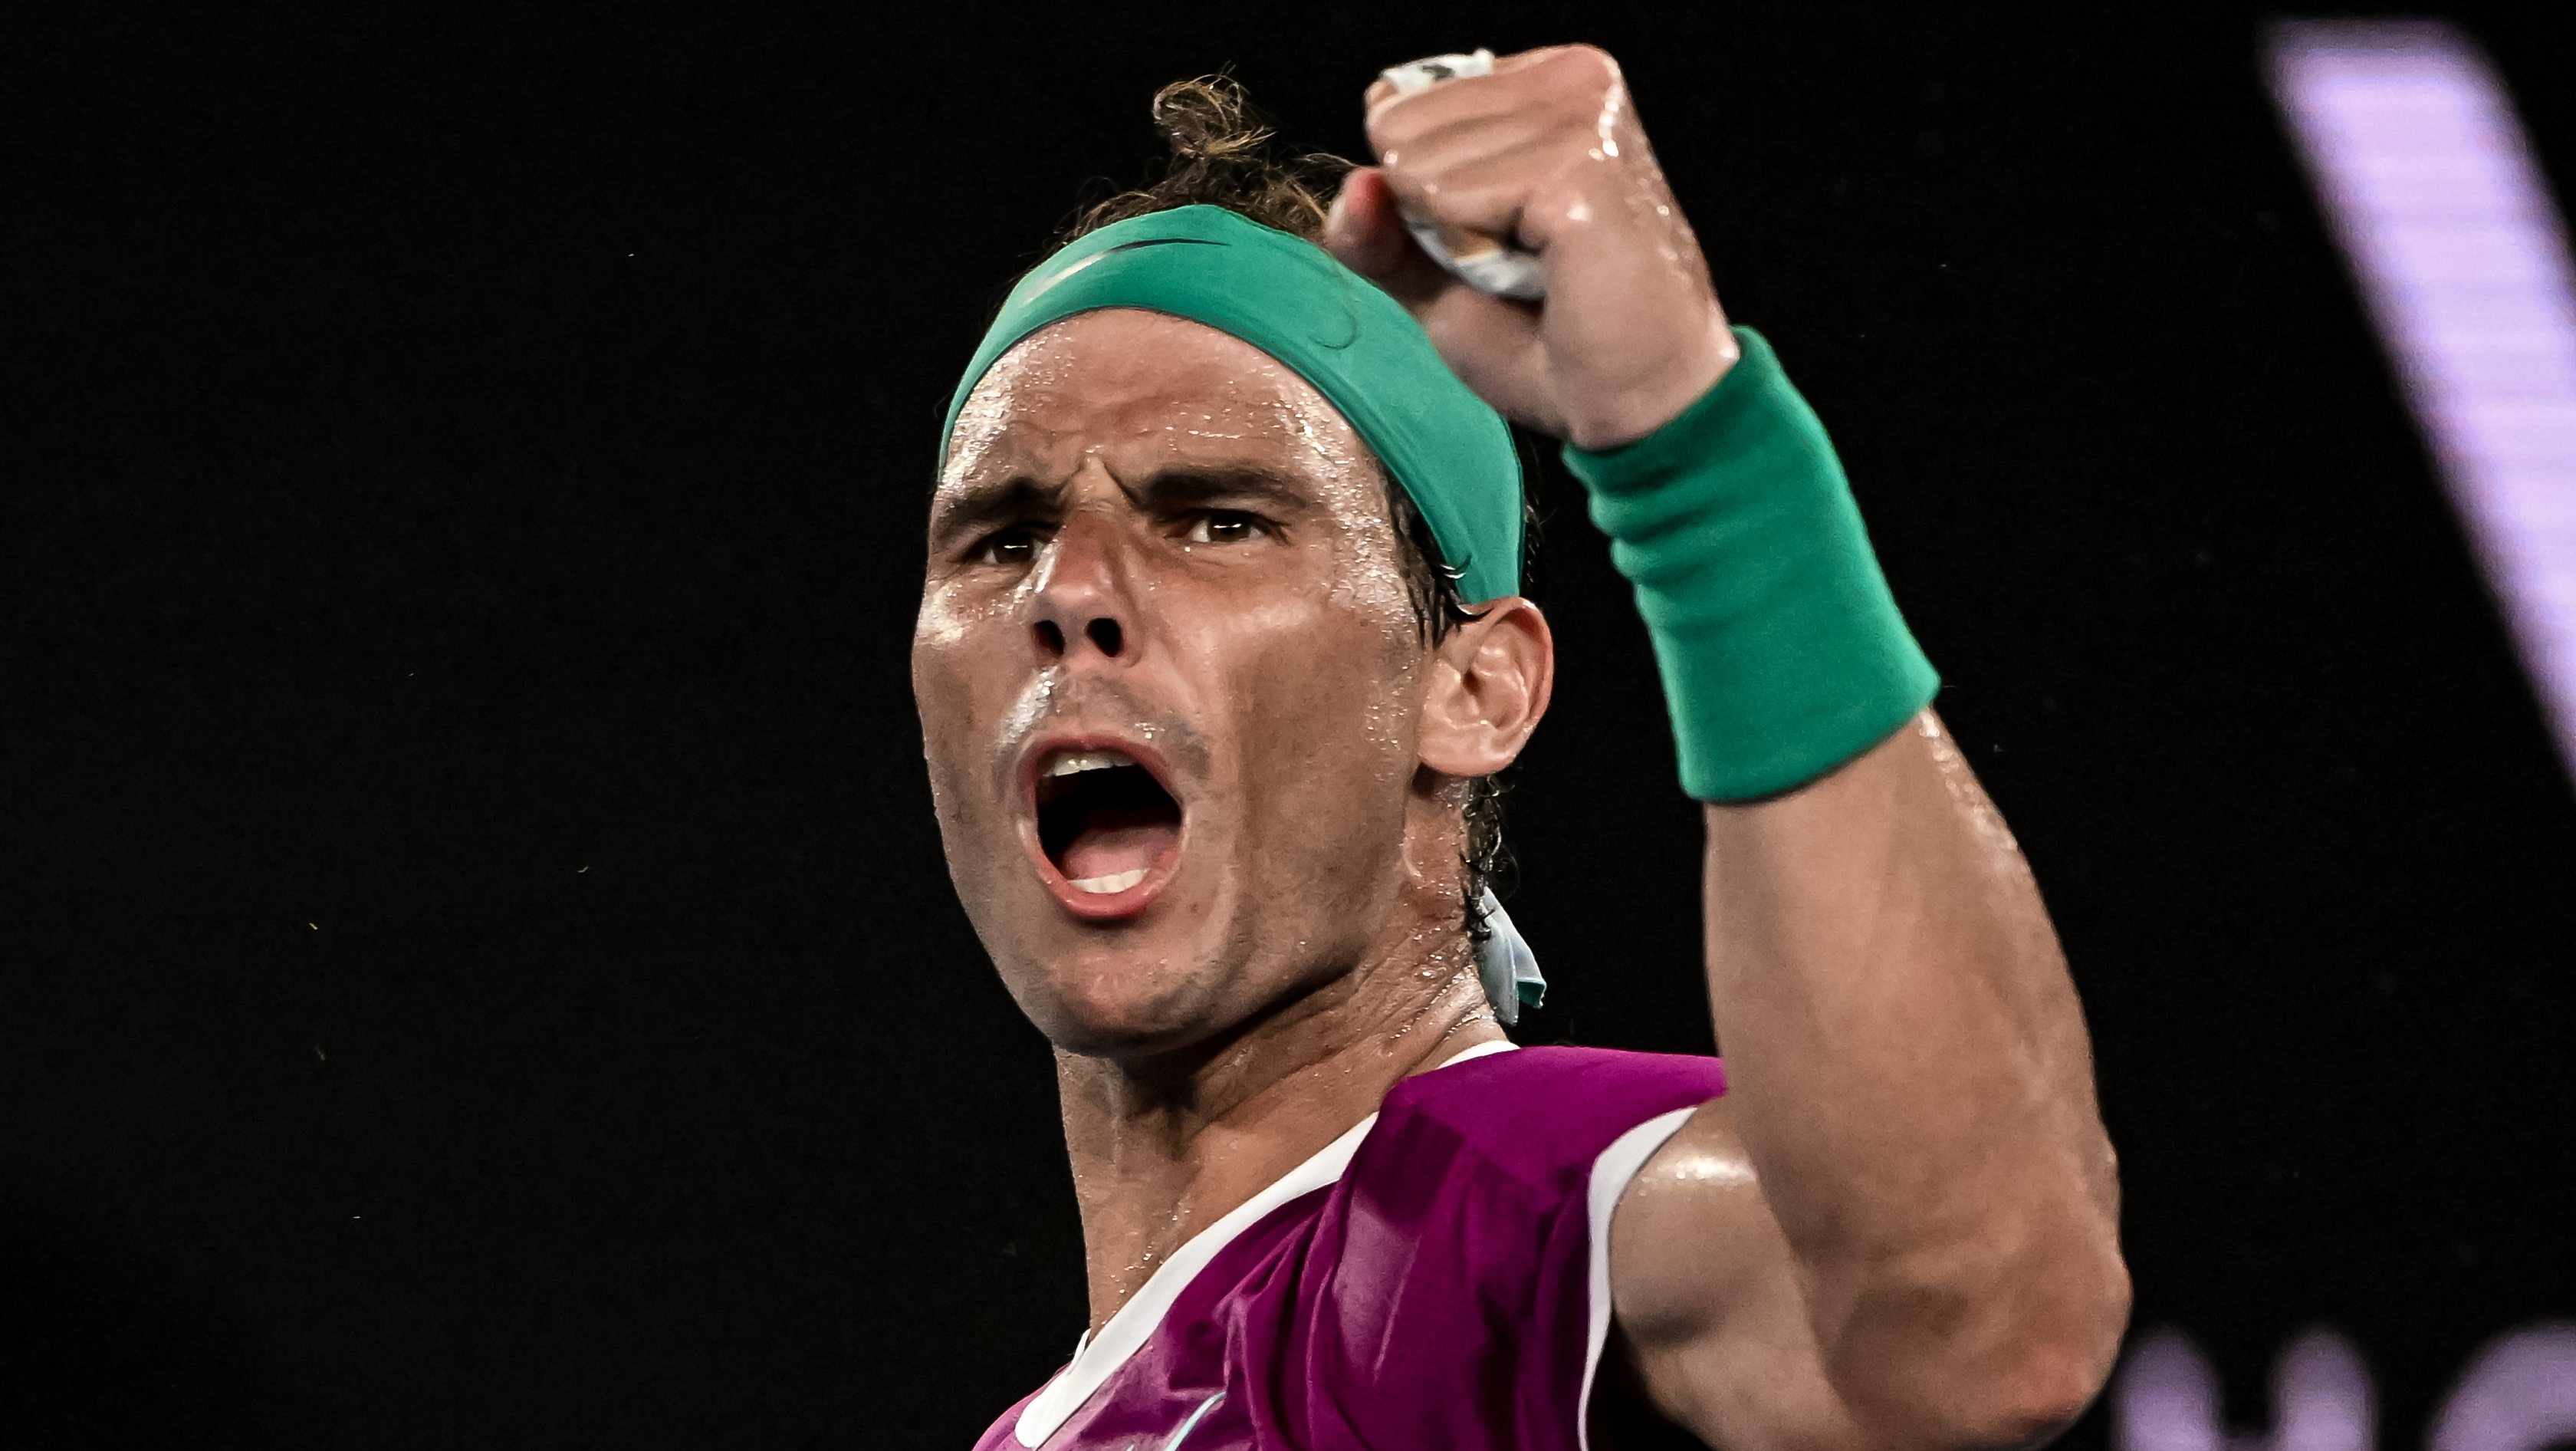 Rafael Nadal voltou a ter uma demonstração de força, de perseverança e de superação na final histórica do Open da Austrália